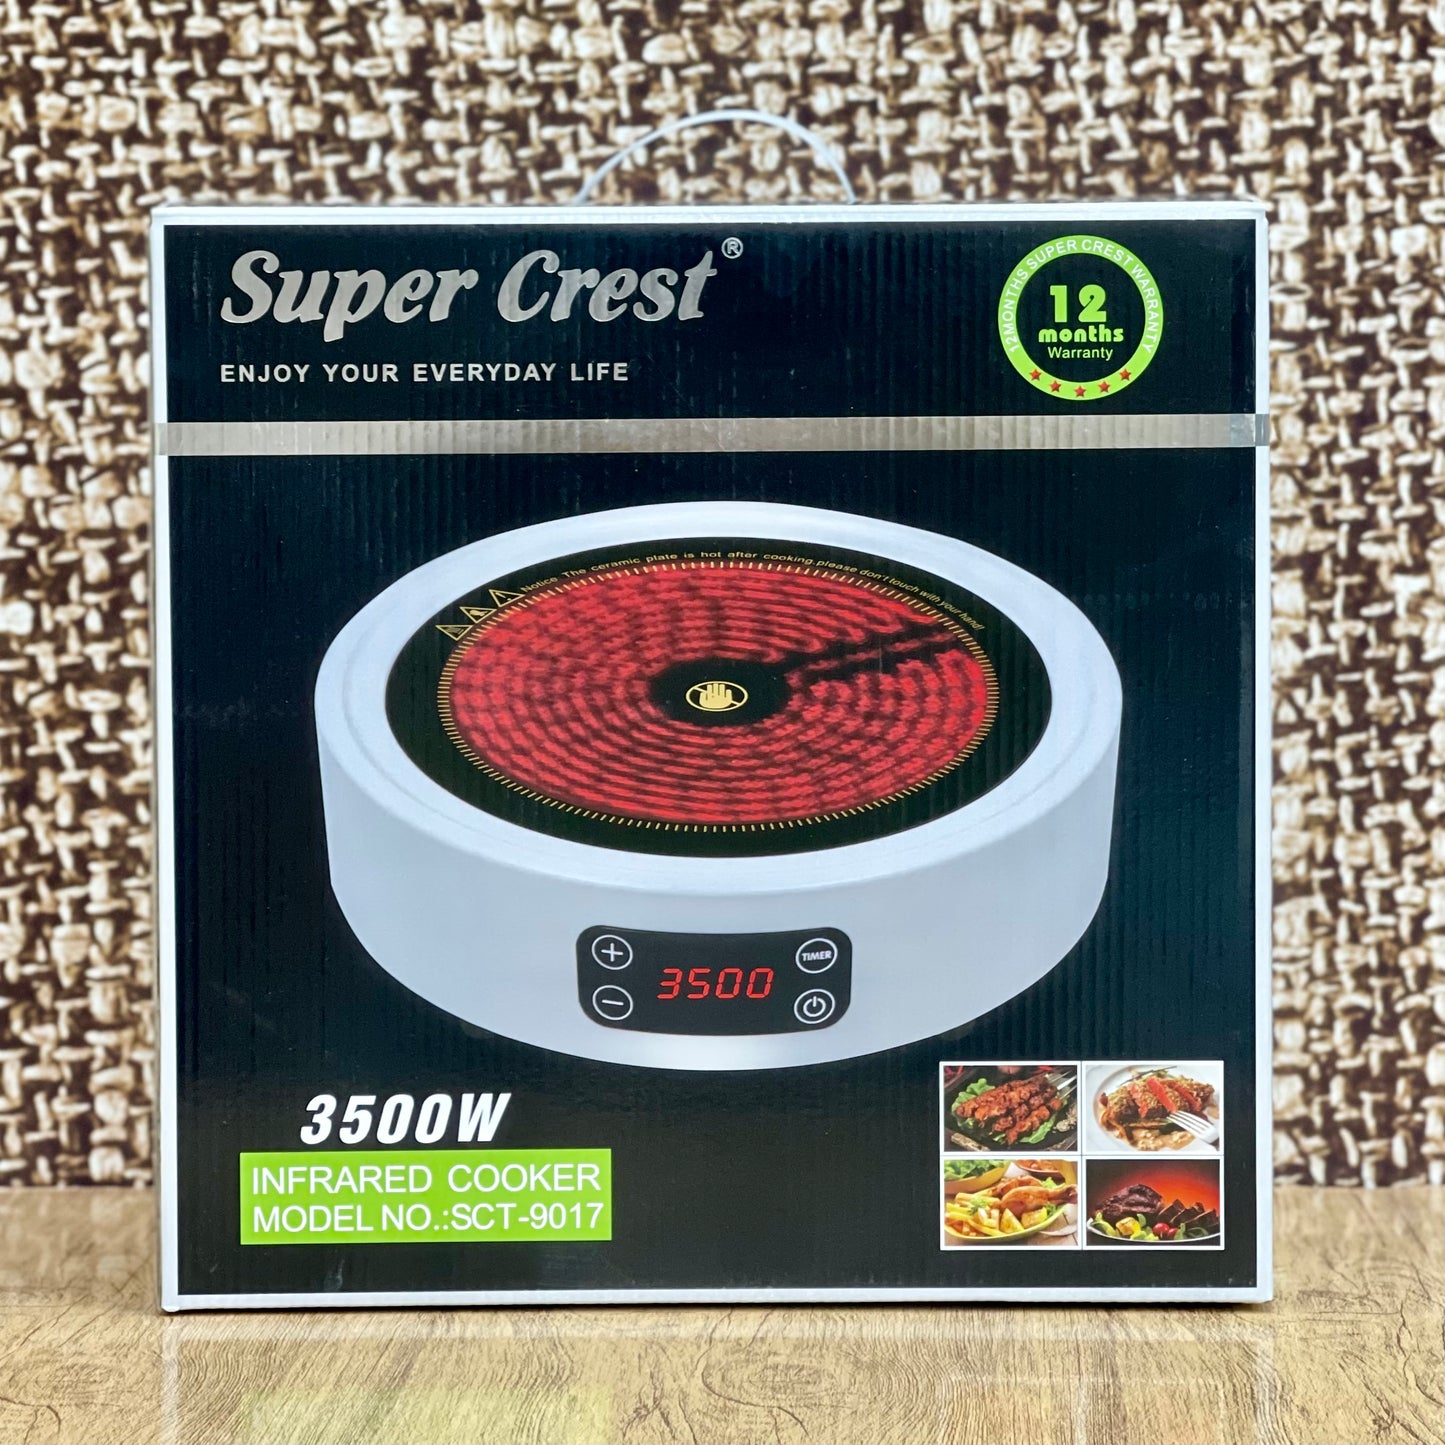 Super Crest Infrared Cooker